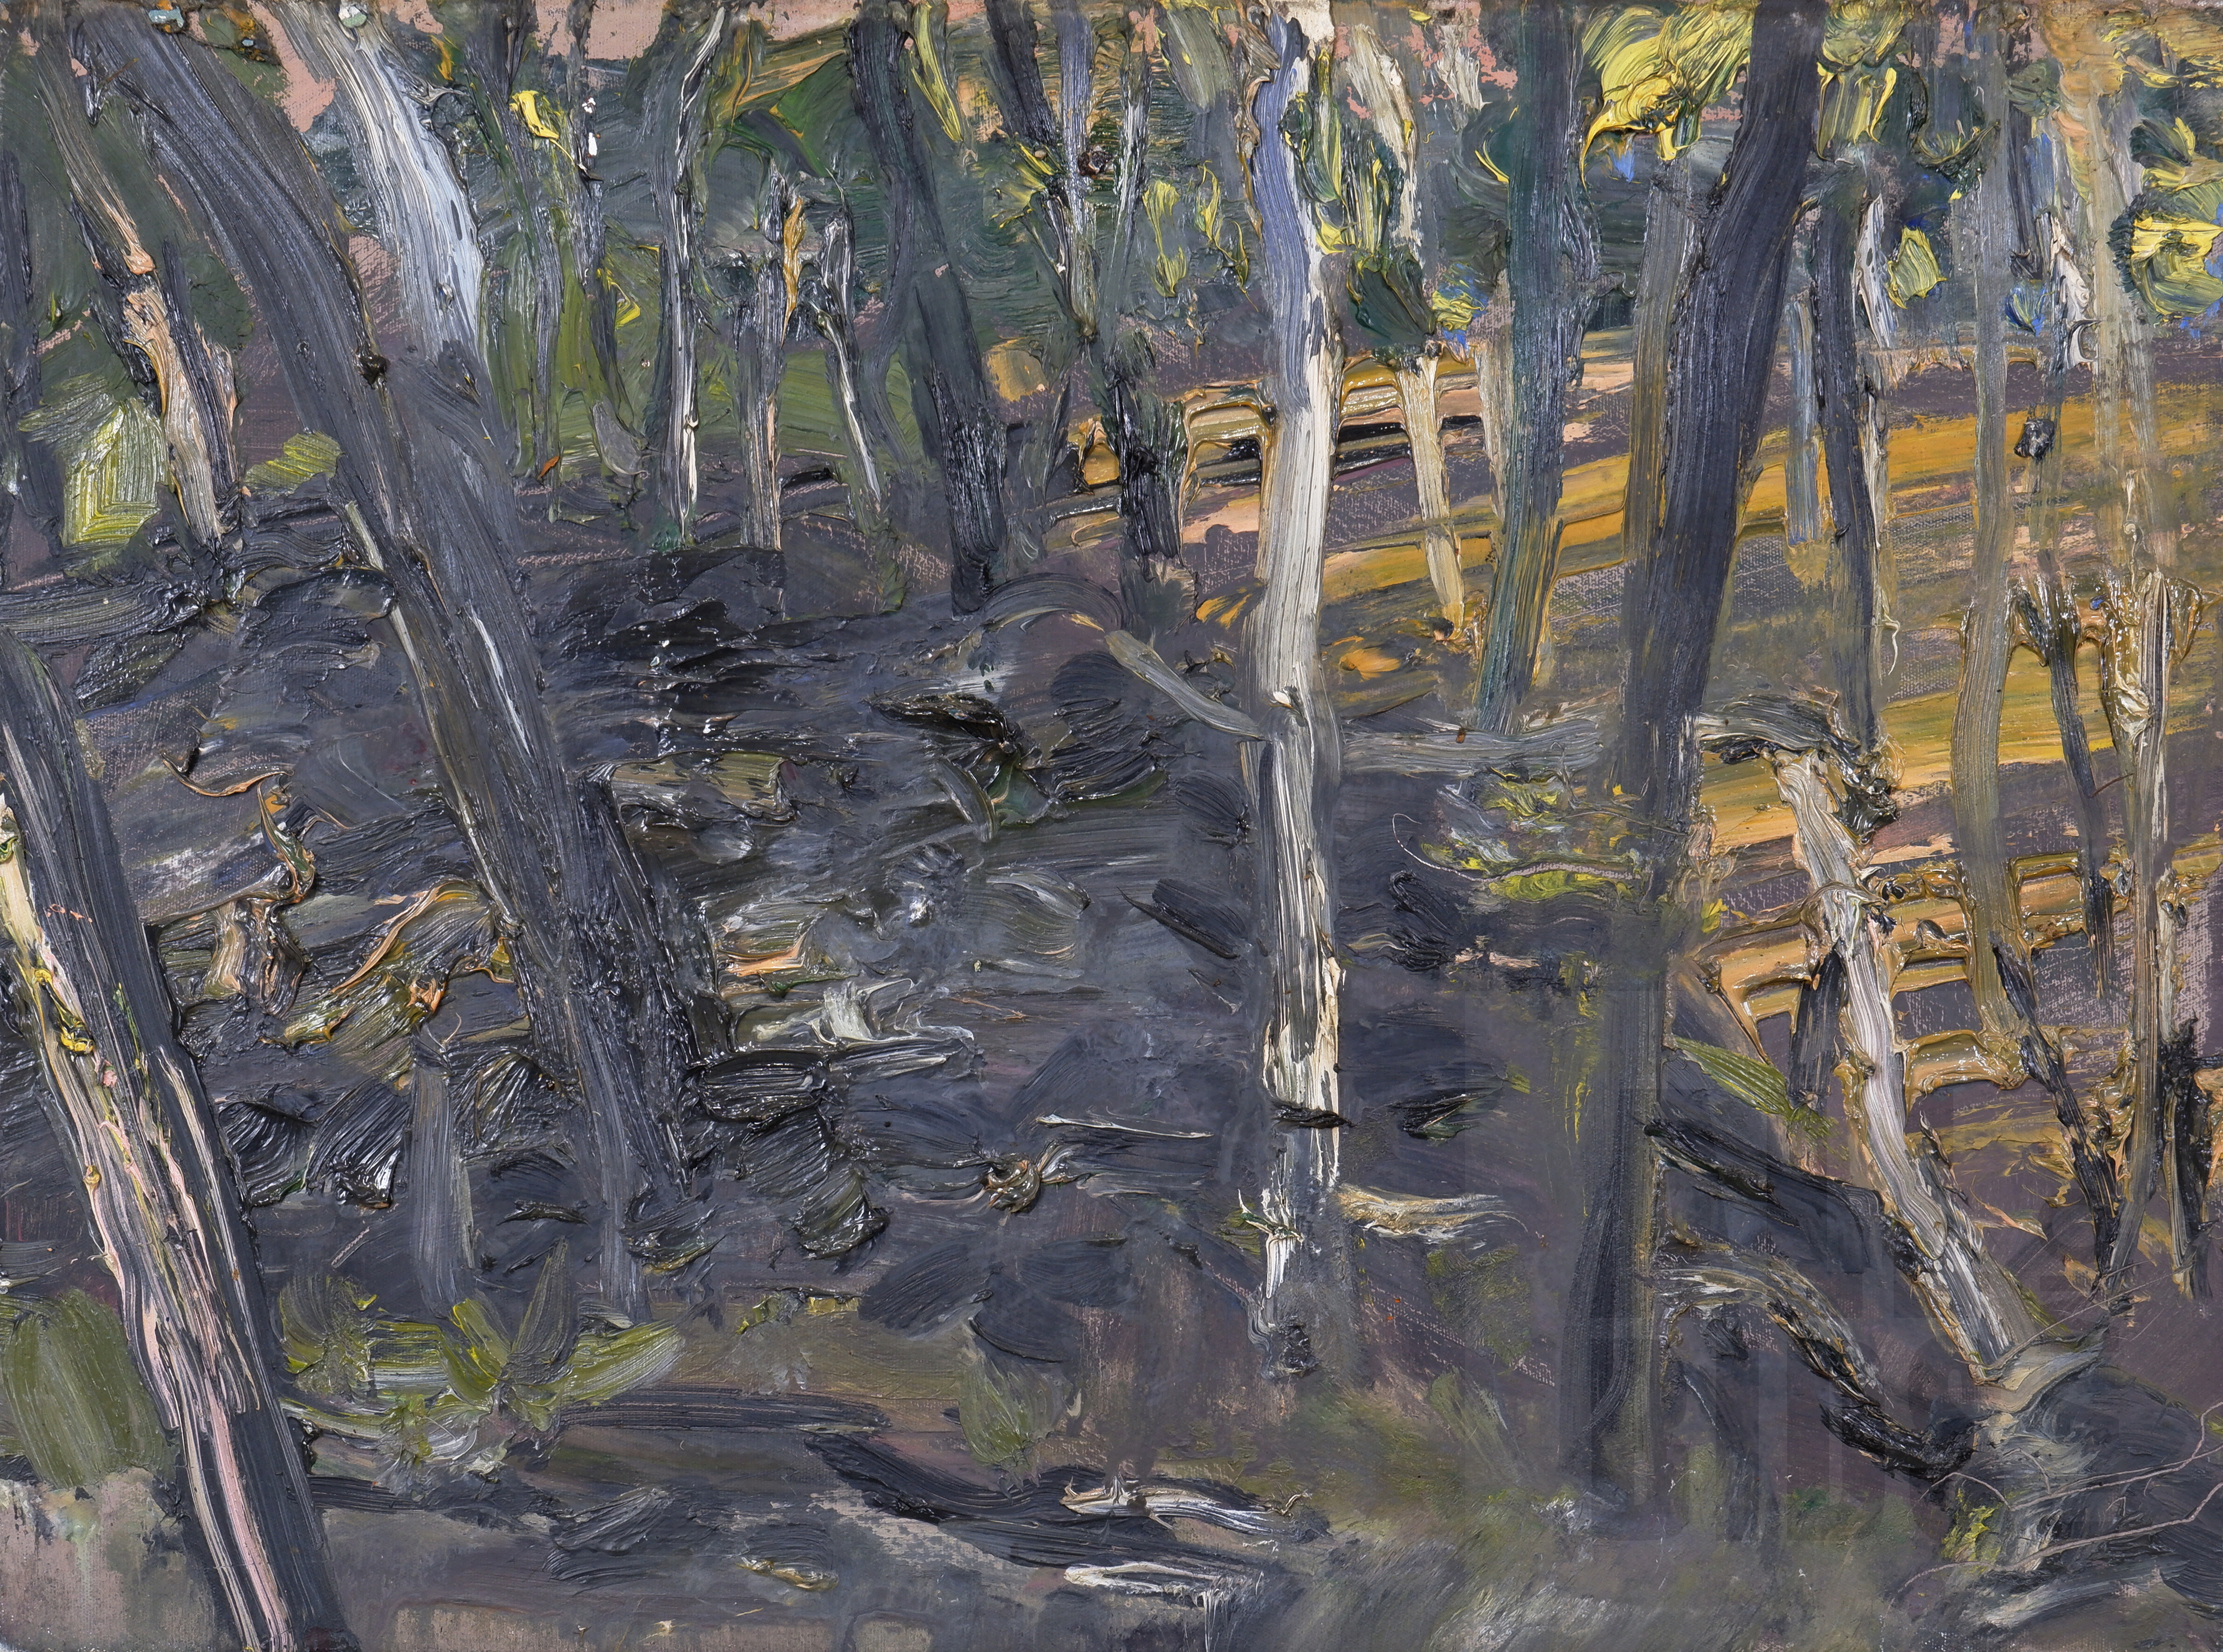 'Euan Macleod (born 1956), Mound Through Trees (Bathurst) 2001, Oil on Canvas, 38 x 51 cm'